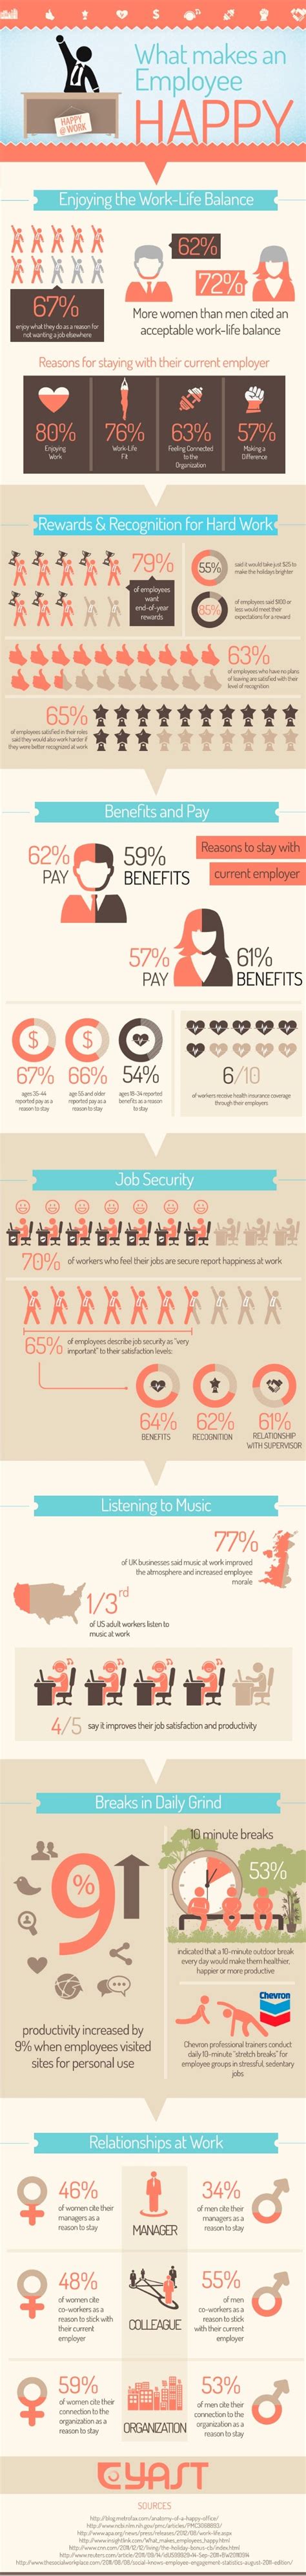 Infographic: Happy Employees